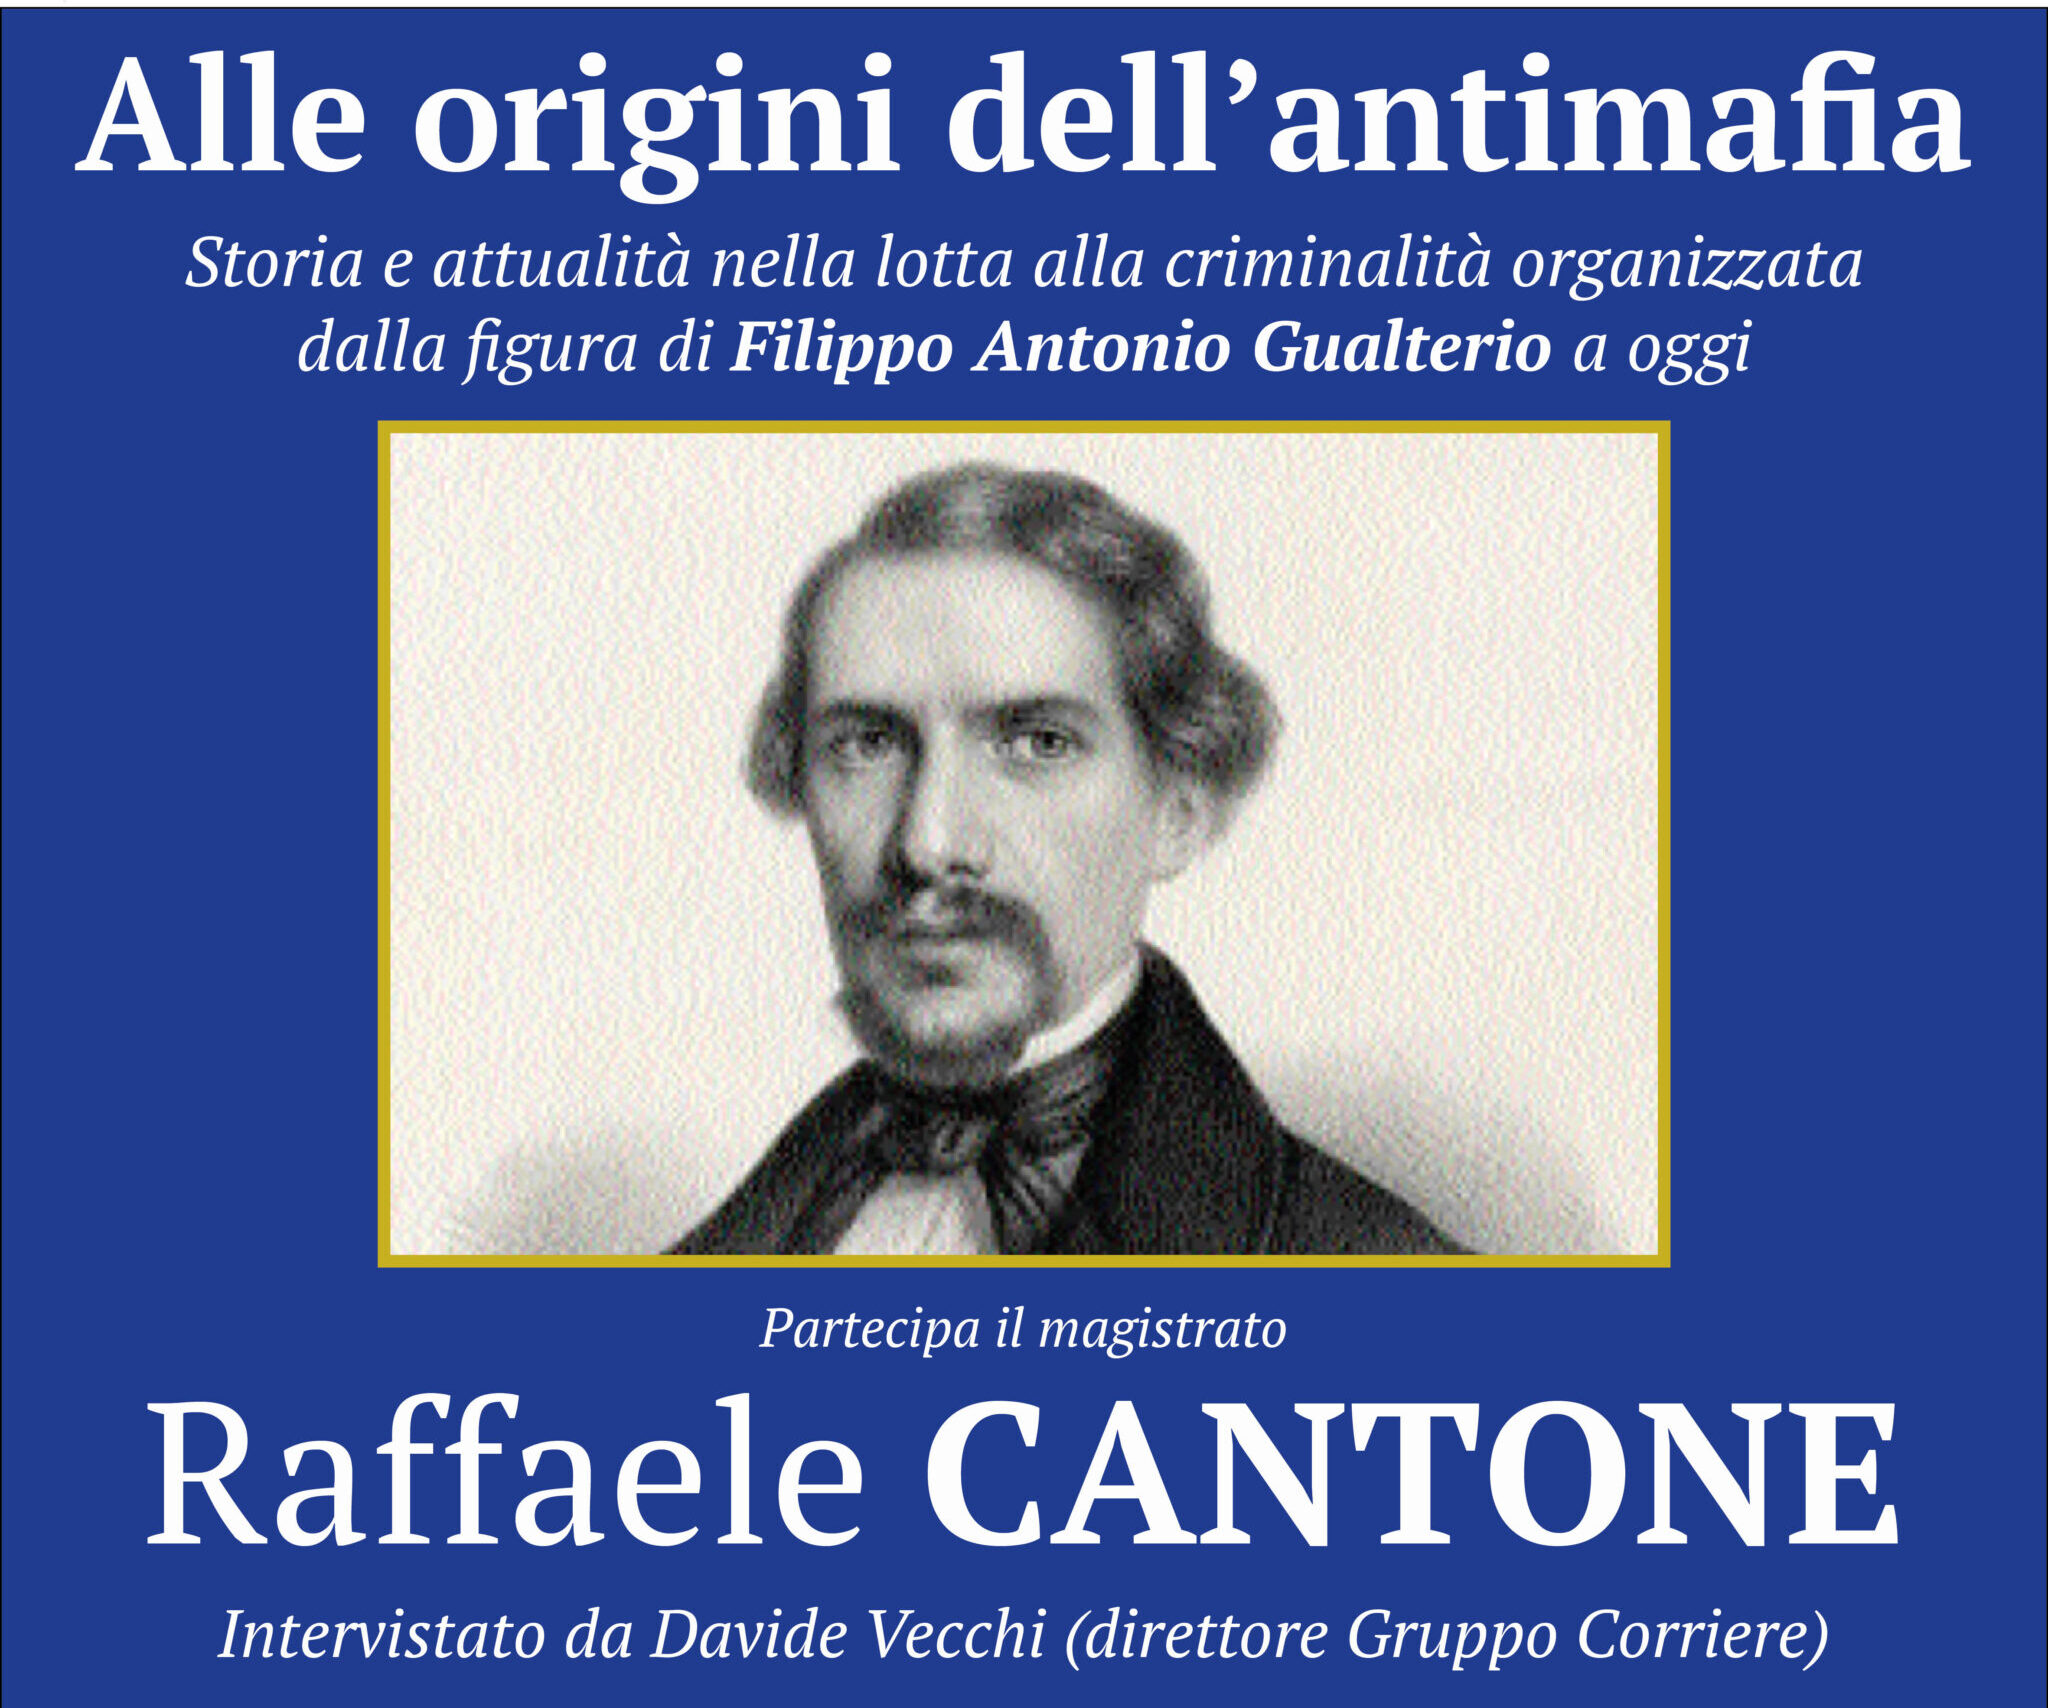 Raffaele Cantone torna a Cortona per parlare delle origini dell’antimafia